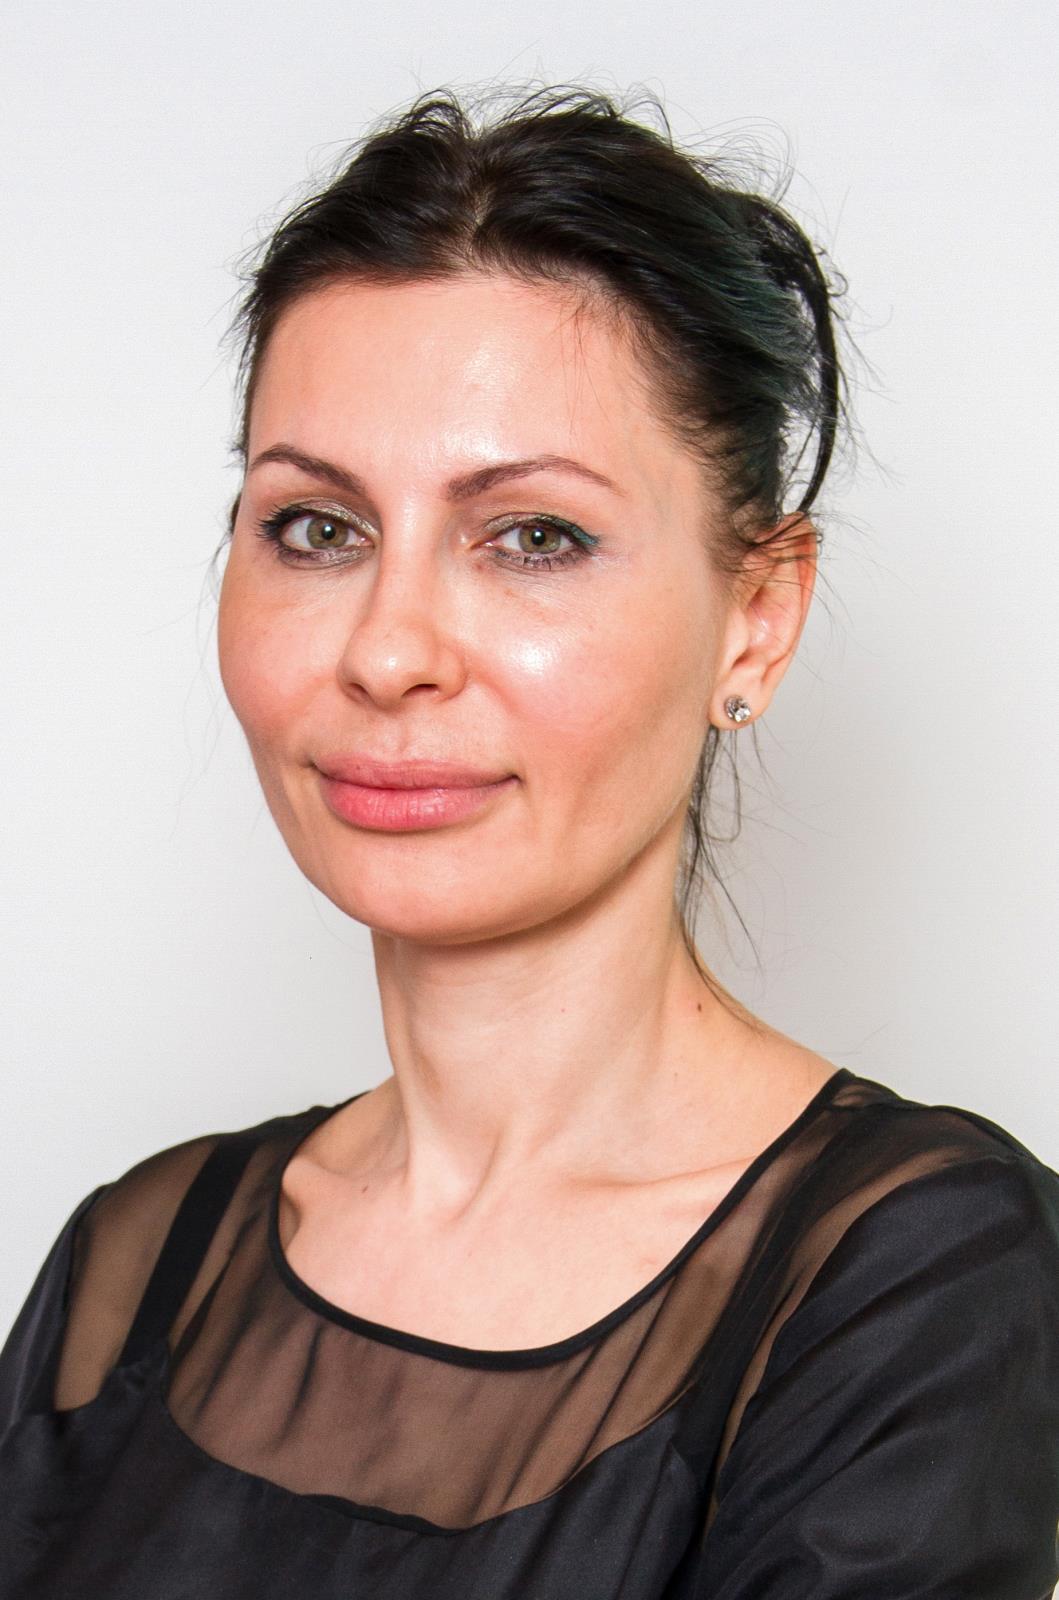 Dr. Gabriela Popescu